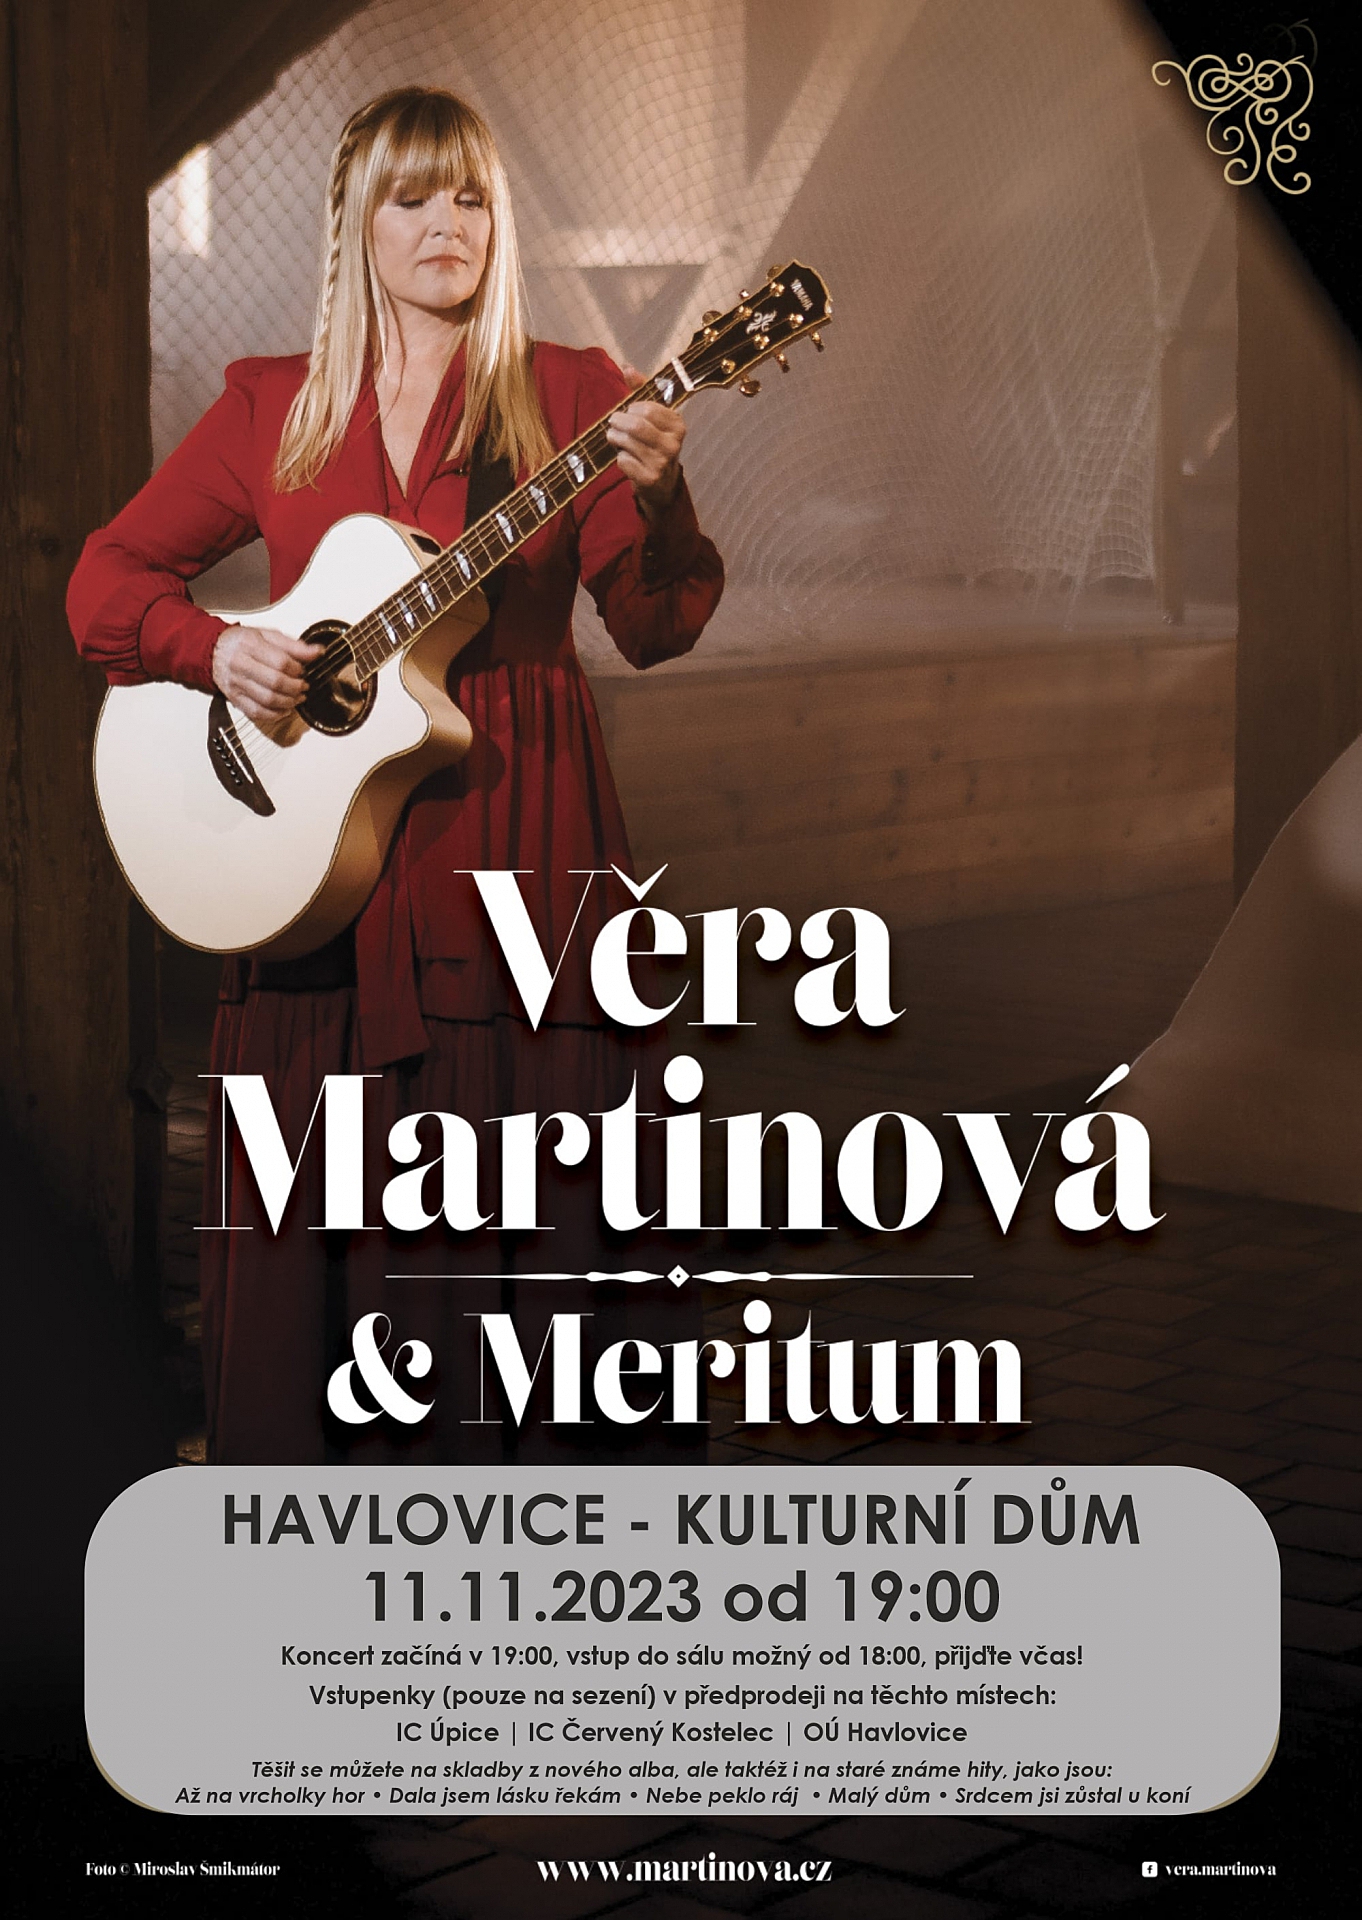 Koncert Věry Martinové v Havlovicích